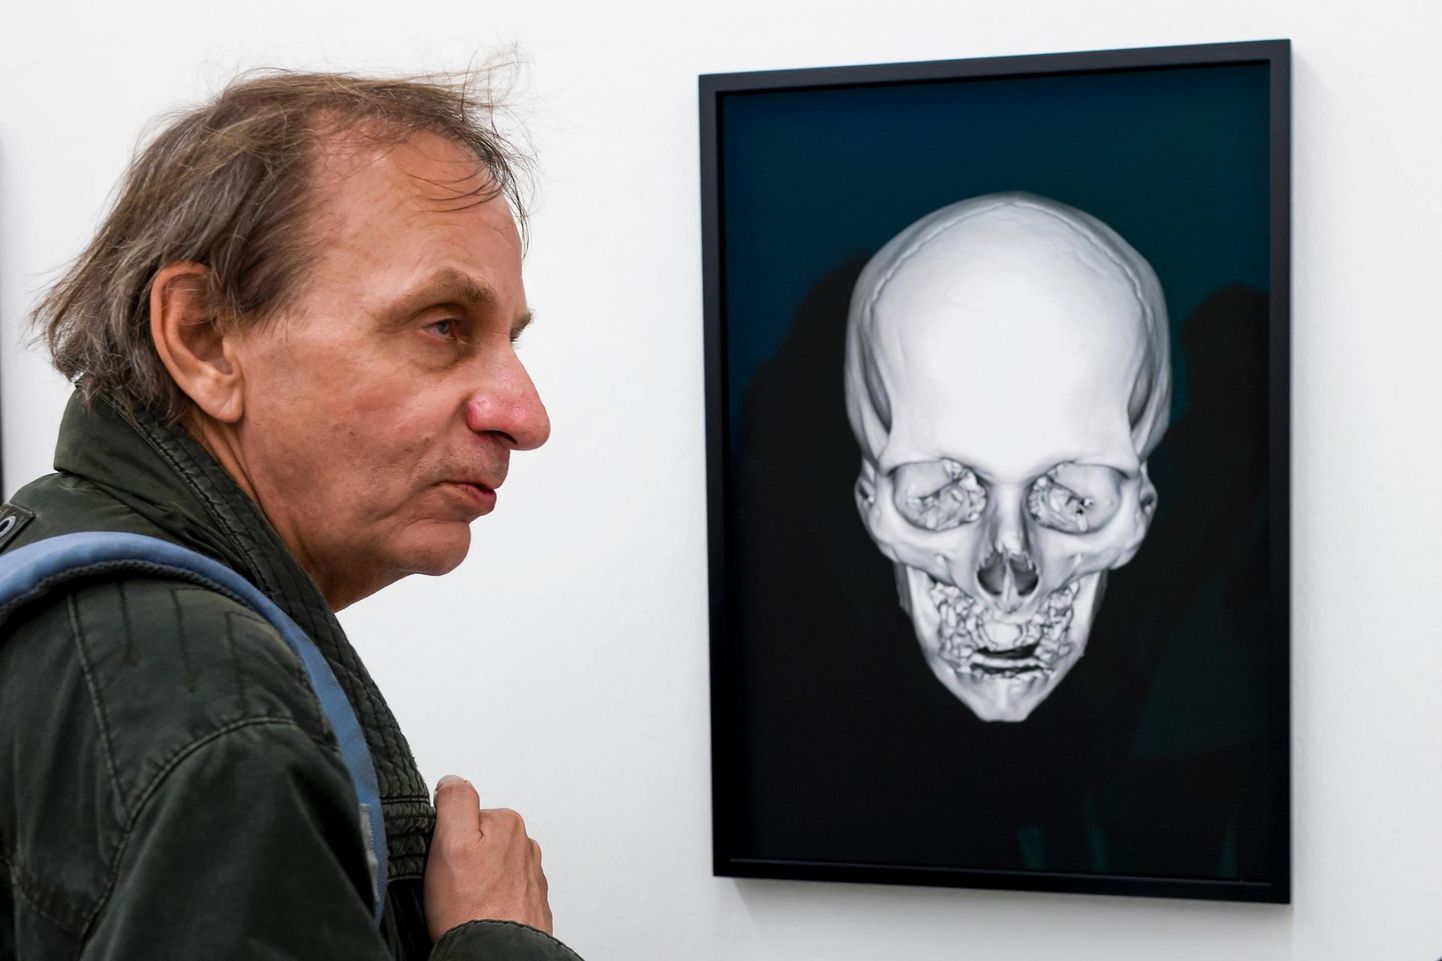 Michel Houellebecq vaatab 2016. aastal Zürichis näitusel Manifesta röntgenipilti oma peast.

 